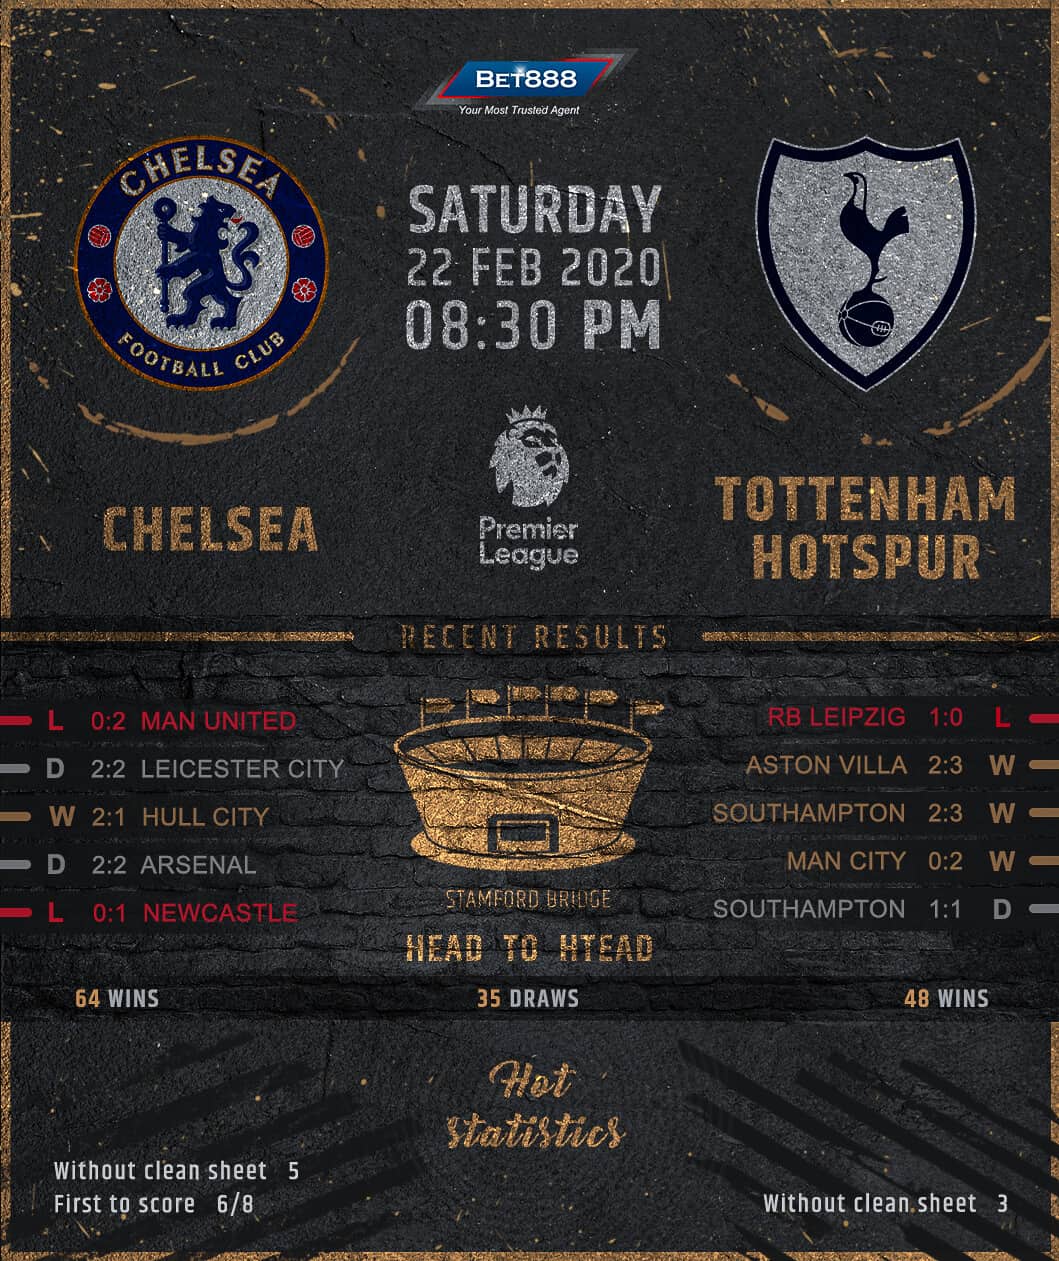 Chelsea vs Tottenham Hotspur 22/02/20